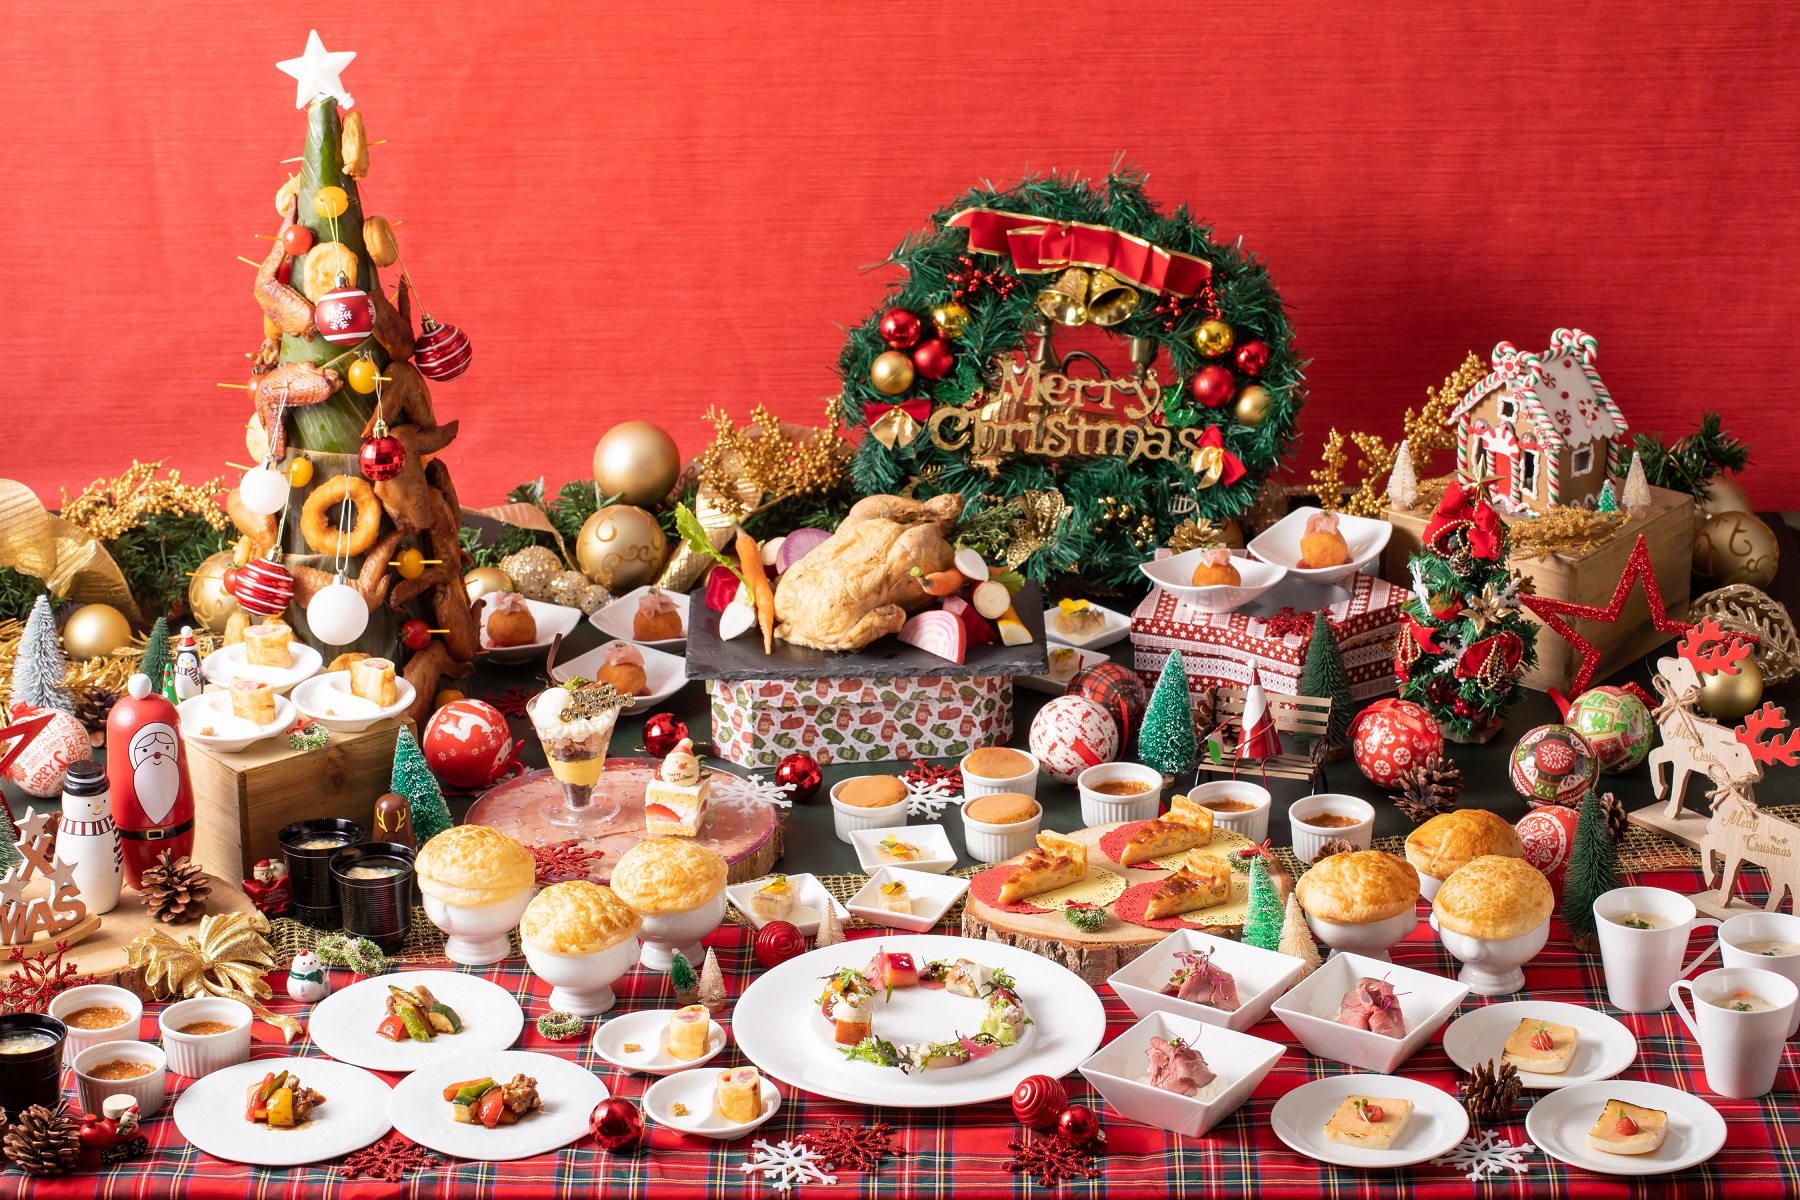 クリスマスオーナメント作りやお子様縁日も楽しめる ホテルメイドの約種類のお料理と専属パティシエ特製のクリスマススイーツをご家族で クリスマスファミリーブッフェ 開催 Newscast